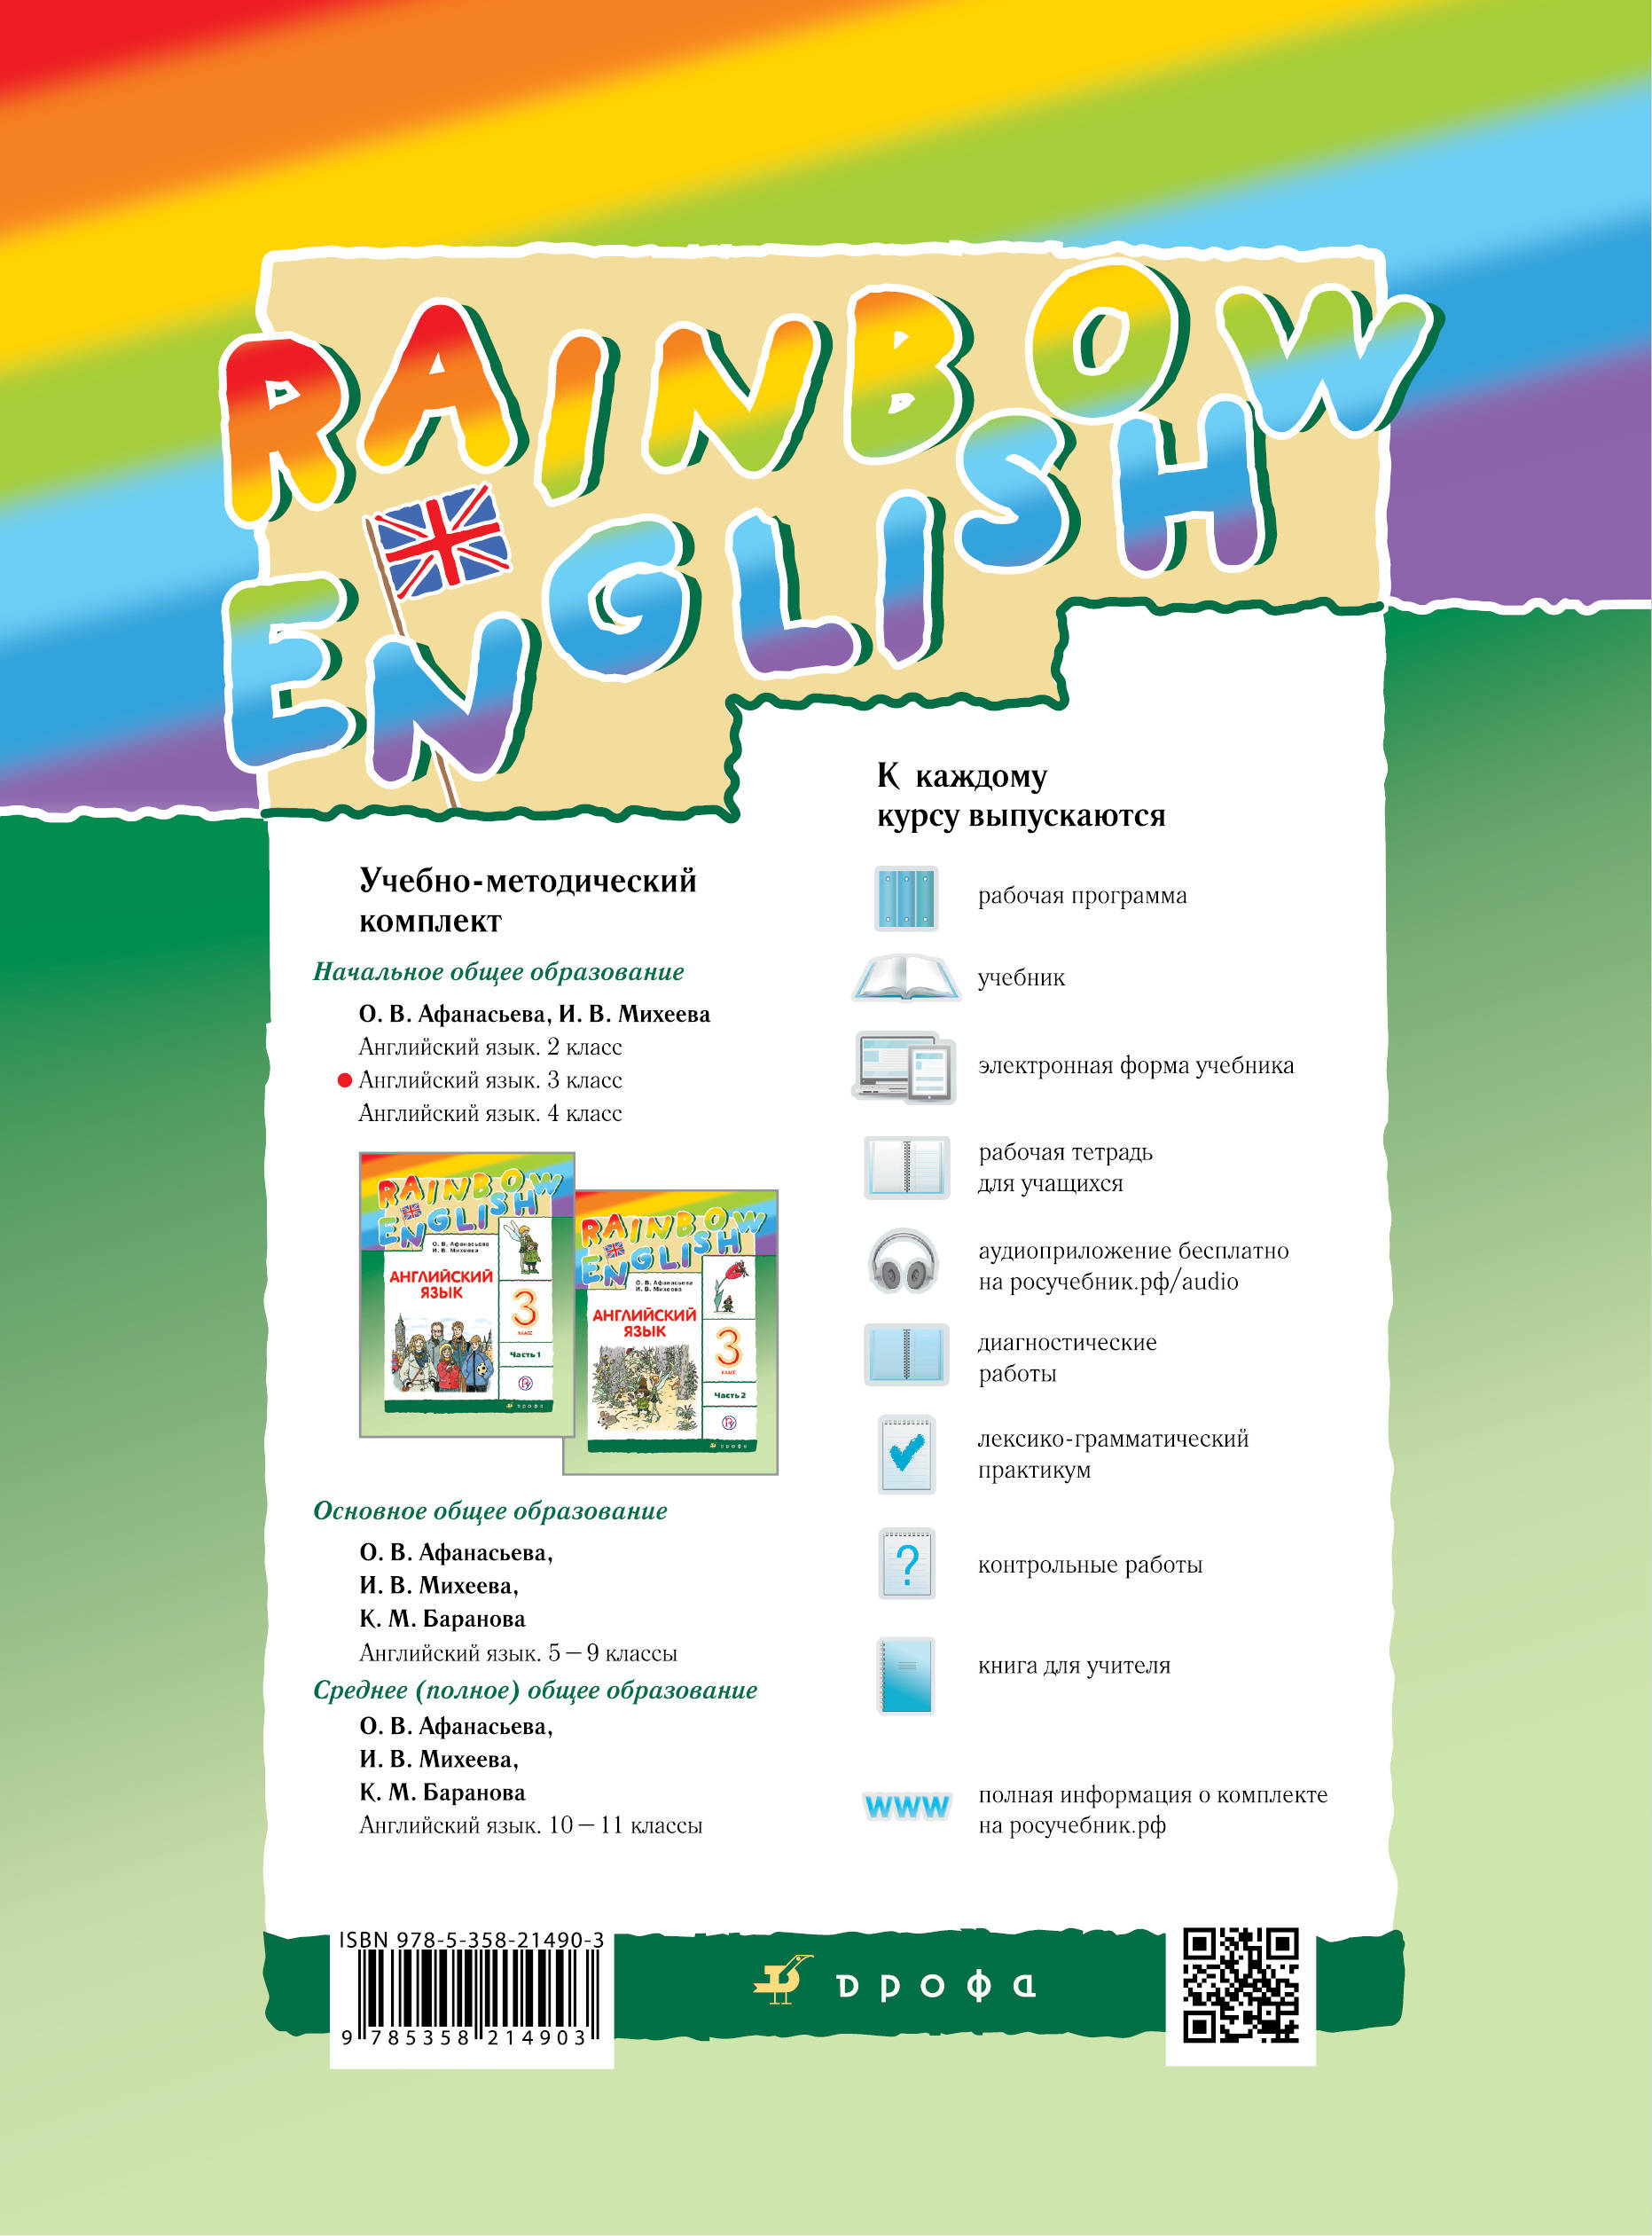 Rainbow english 4 аудио к рабочей. Английский Rainbow English 3 класс. Rainbow English 3 класса о .в. Афанасьева. Английский 3 класс учебник Афанасьева. Rainbow English 3 класс аудио к учебнику Афанасьева.